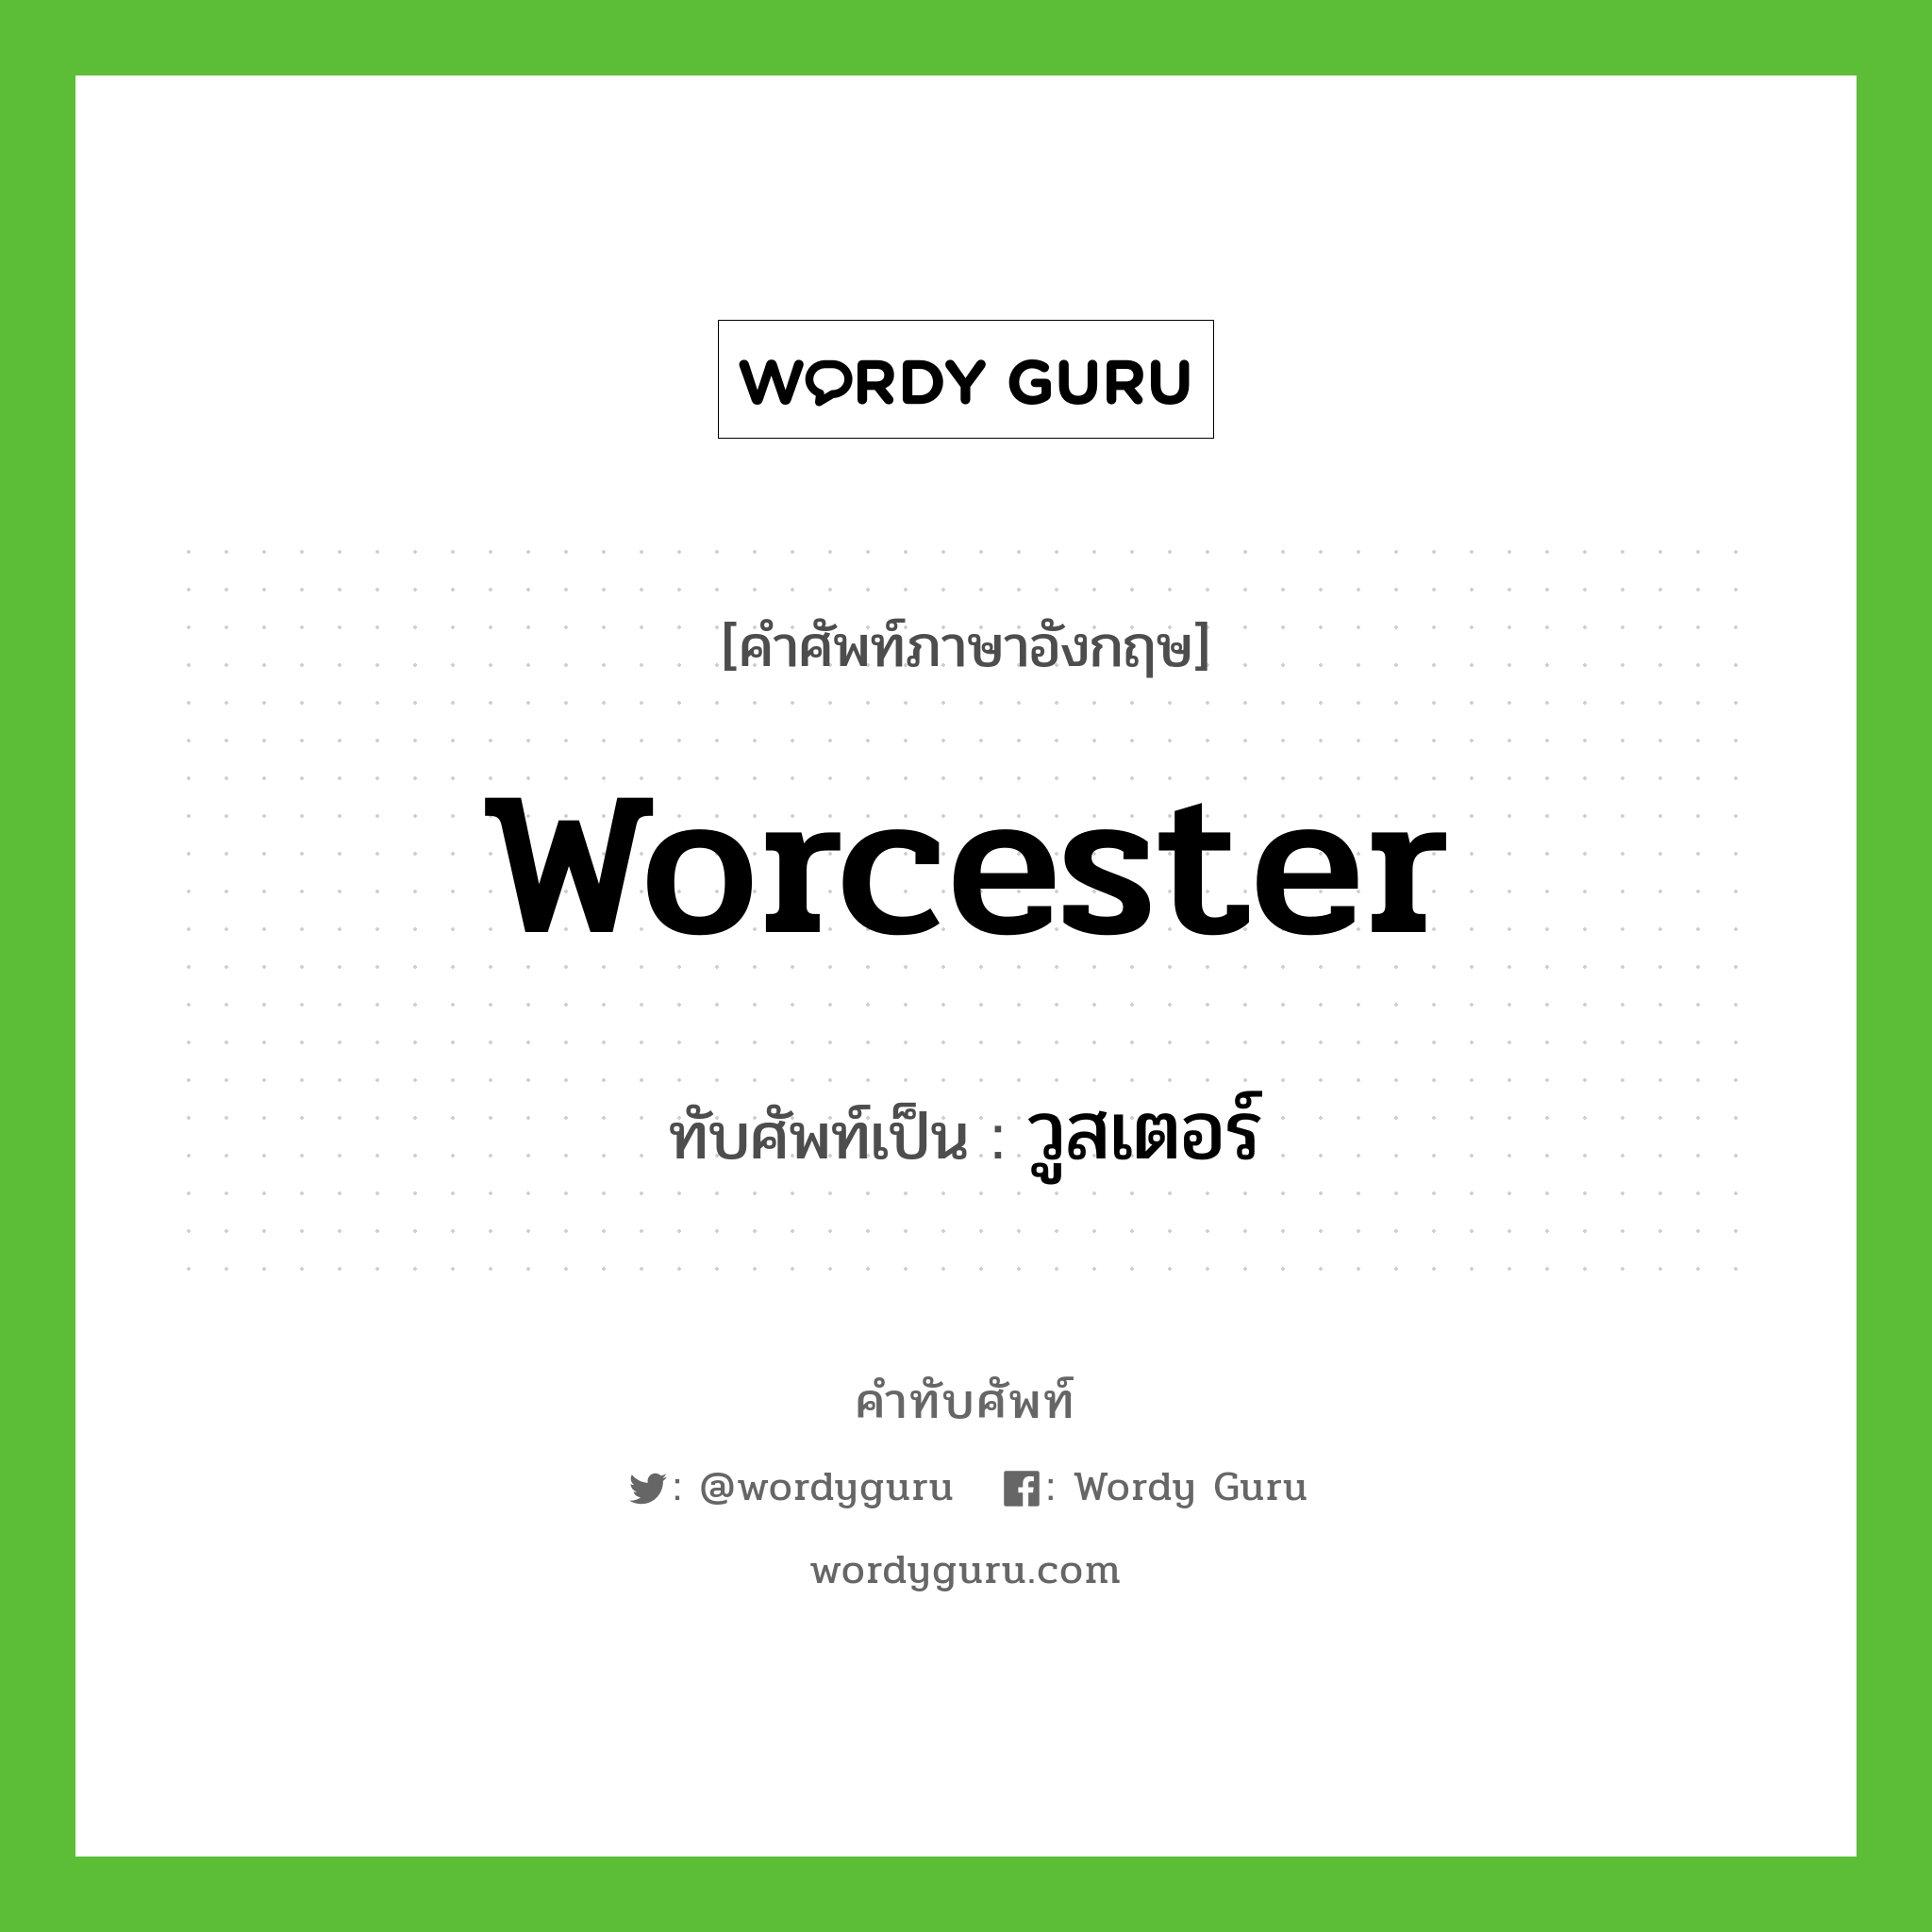 วูสเตอร์ เขียนอย่างไร?, คำศัพท์ภาษาอังกฤษ วูสเตอร์ ทับศัพท์เป็น Worcester